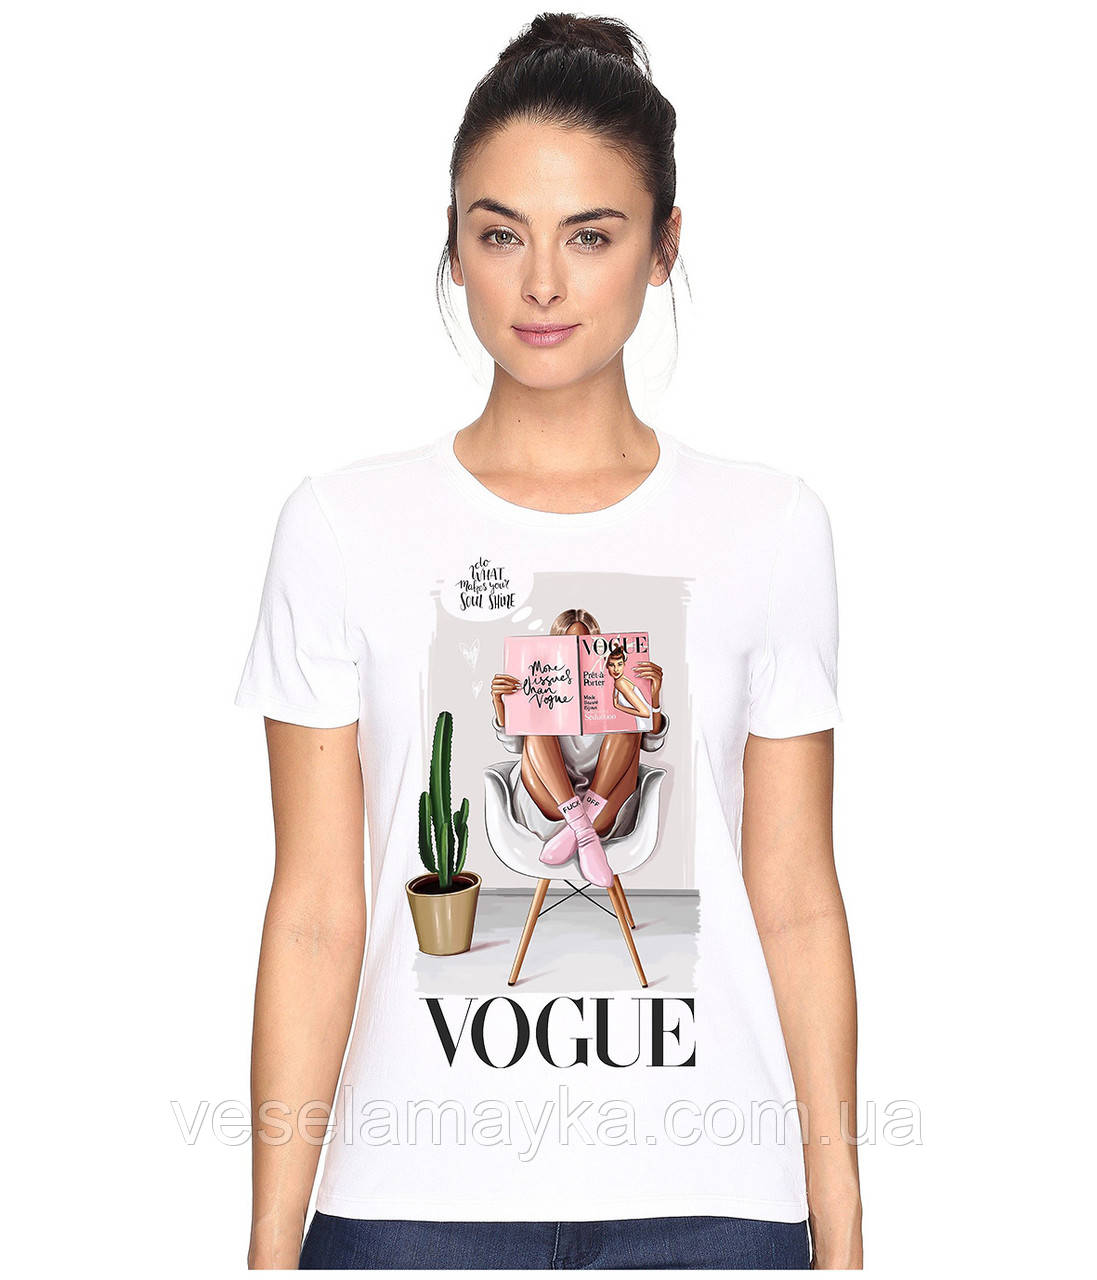 

Стильная женская футболка Vogue 2 S, Белый